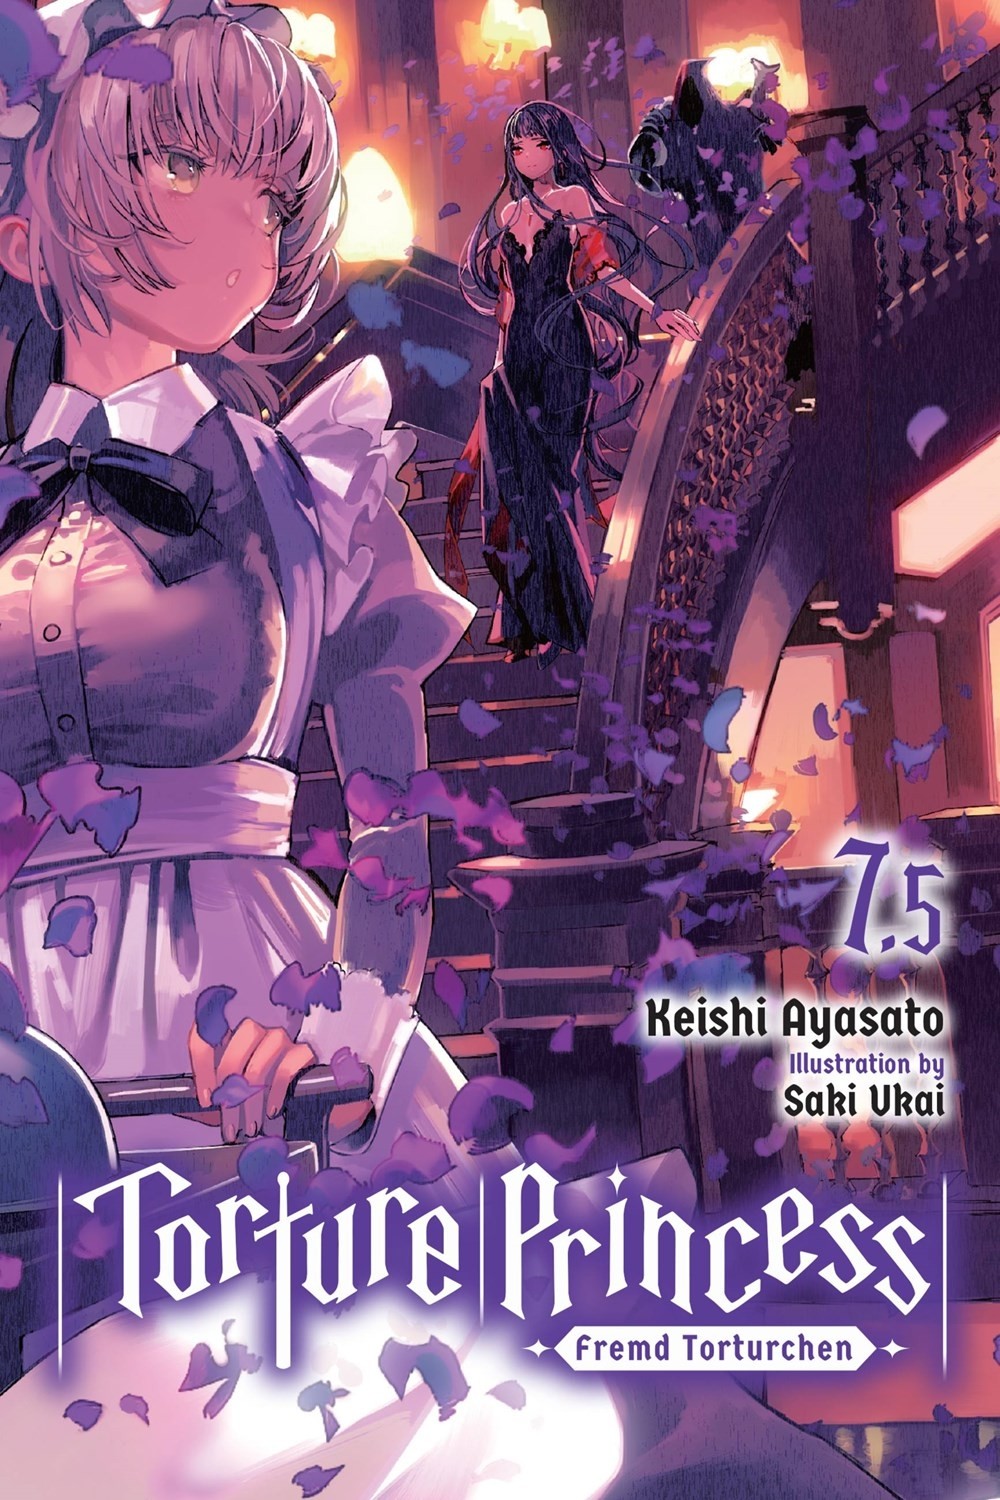 Torture Princess: Fremd Torturchen, (Light Novel) Vol. 07.5